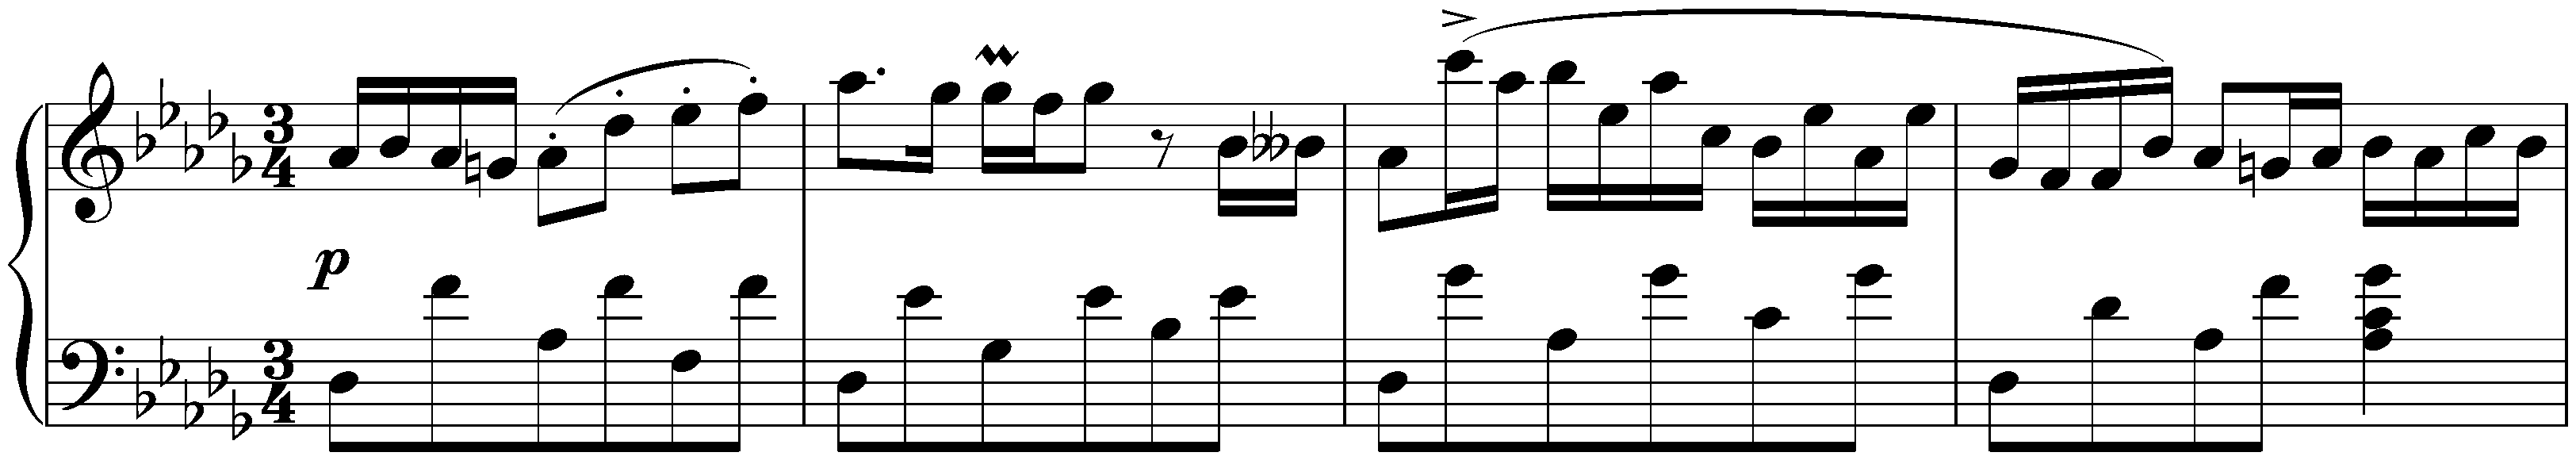 Scherzo in D-flat major, WoO 5